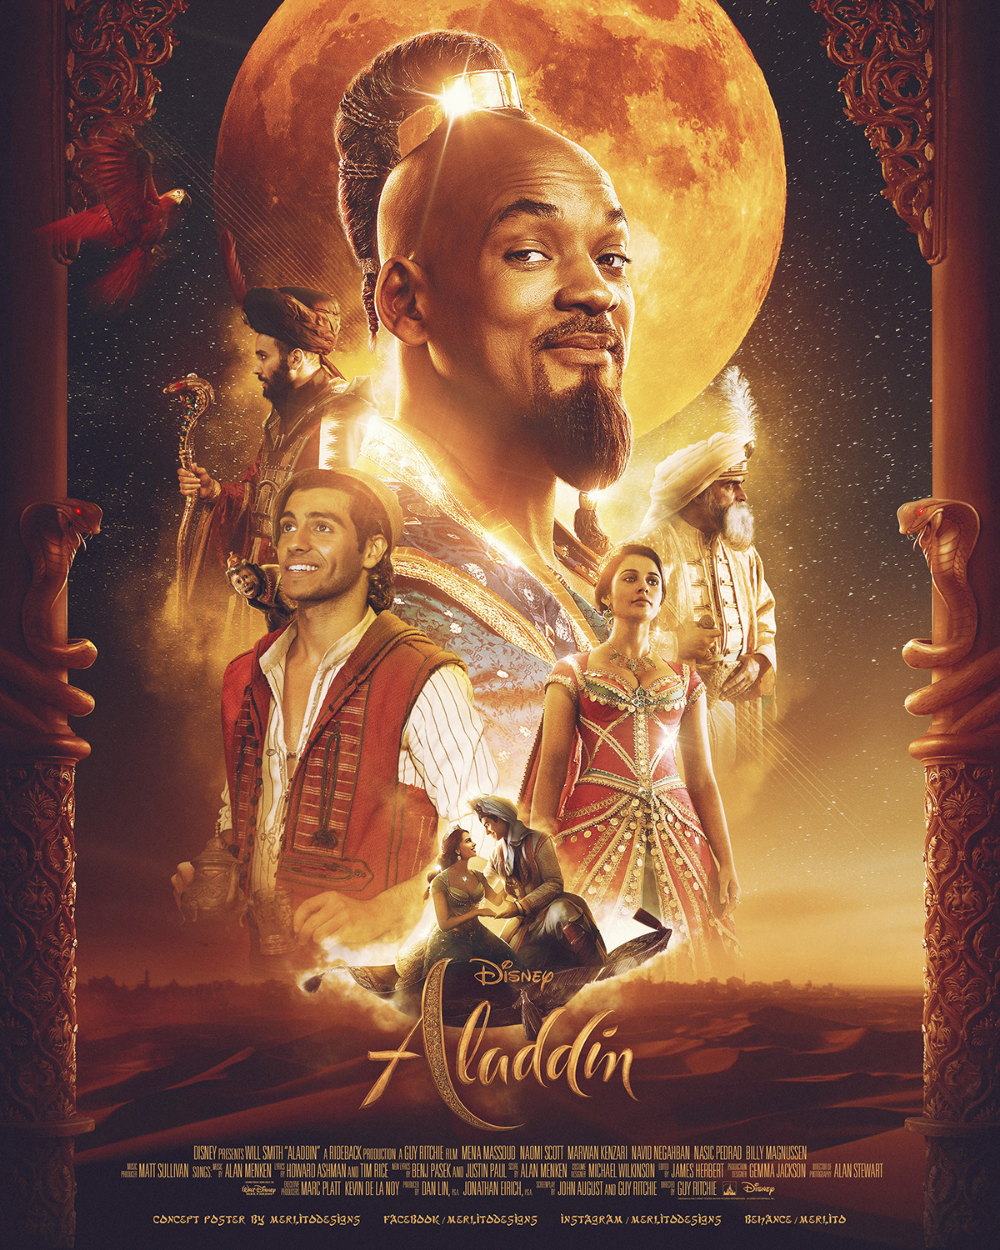 DISNEY's Aladdin. Disney aladdin, Aladdin, Aladdin movie